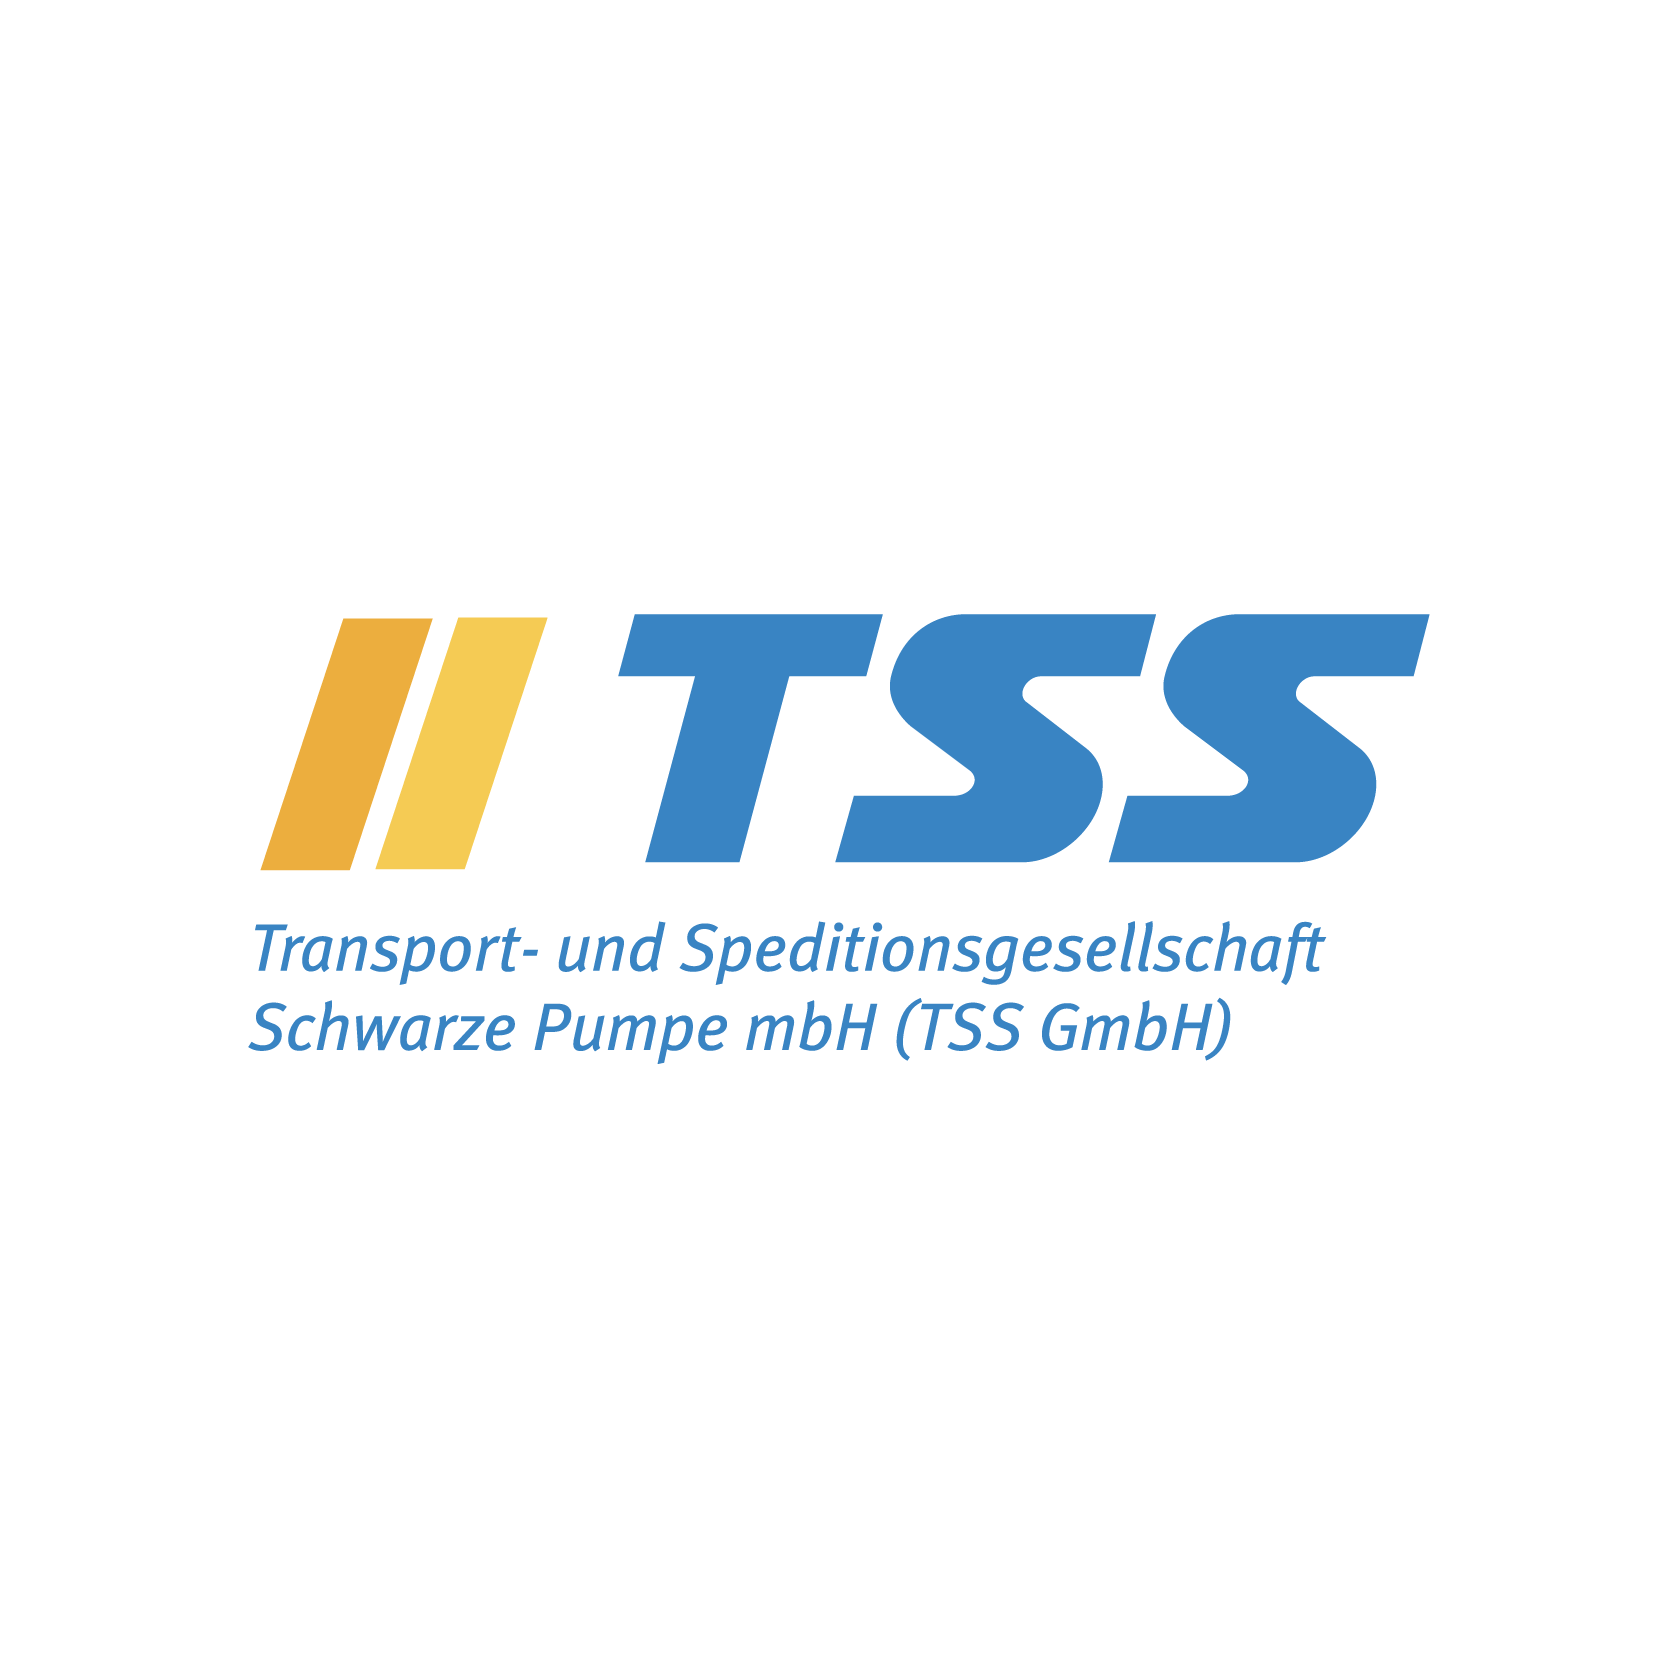 Logo Transport- und Speditionsgesellschaft Schwarze Pumpe mbH (TSS GmbH)